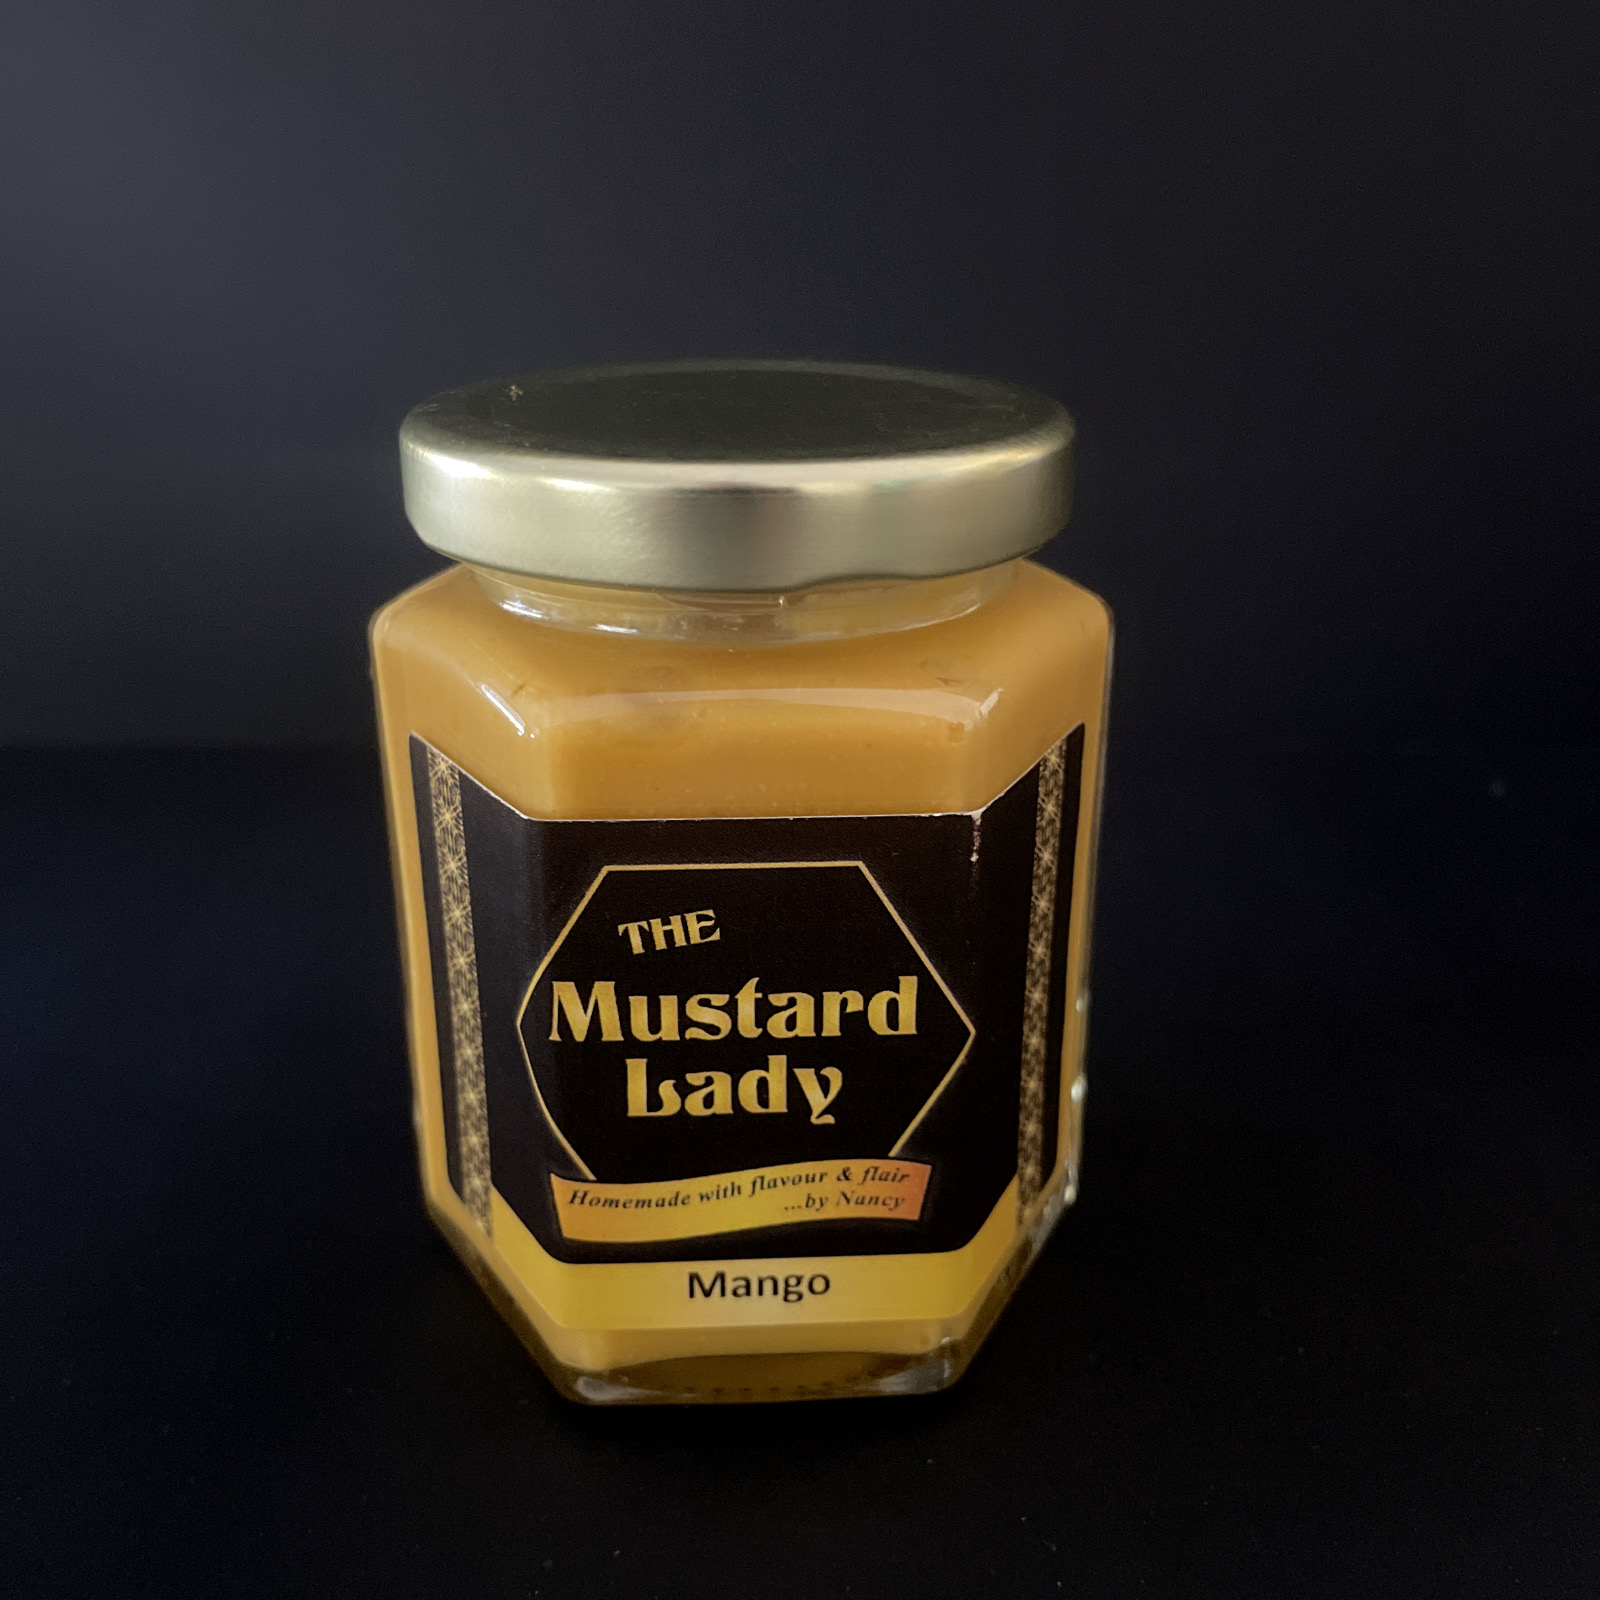 The Mustard Lady: Mango